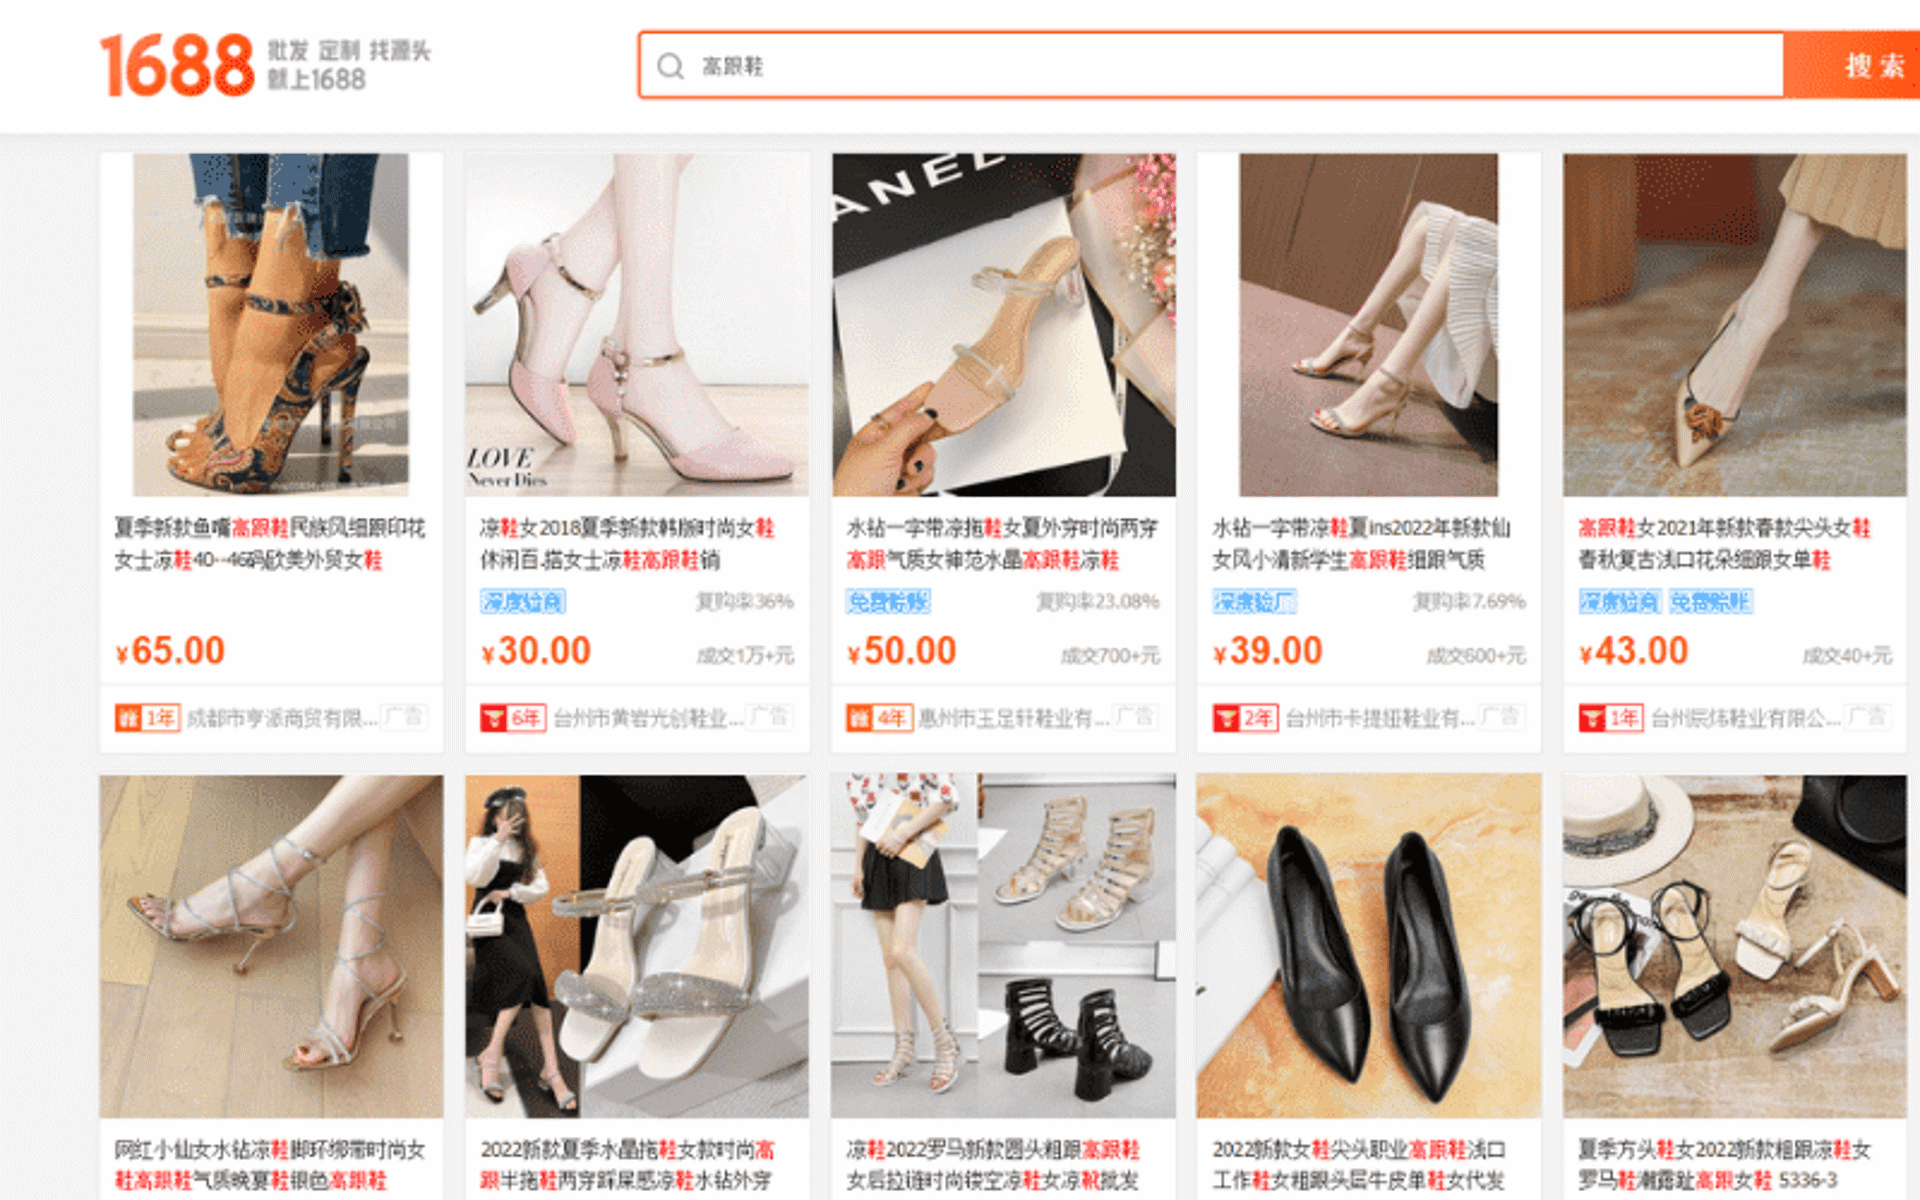 60 link shop order giày nữ Quảng Châu trên Taobao, 1688, Shopee…